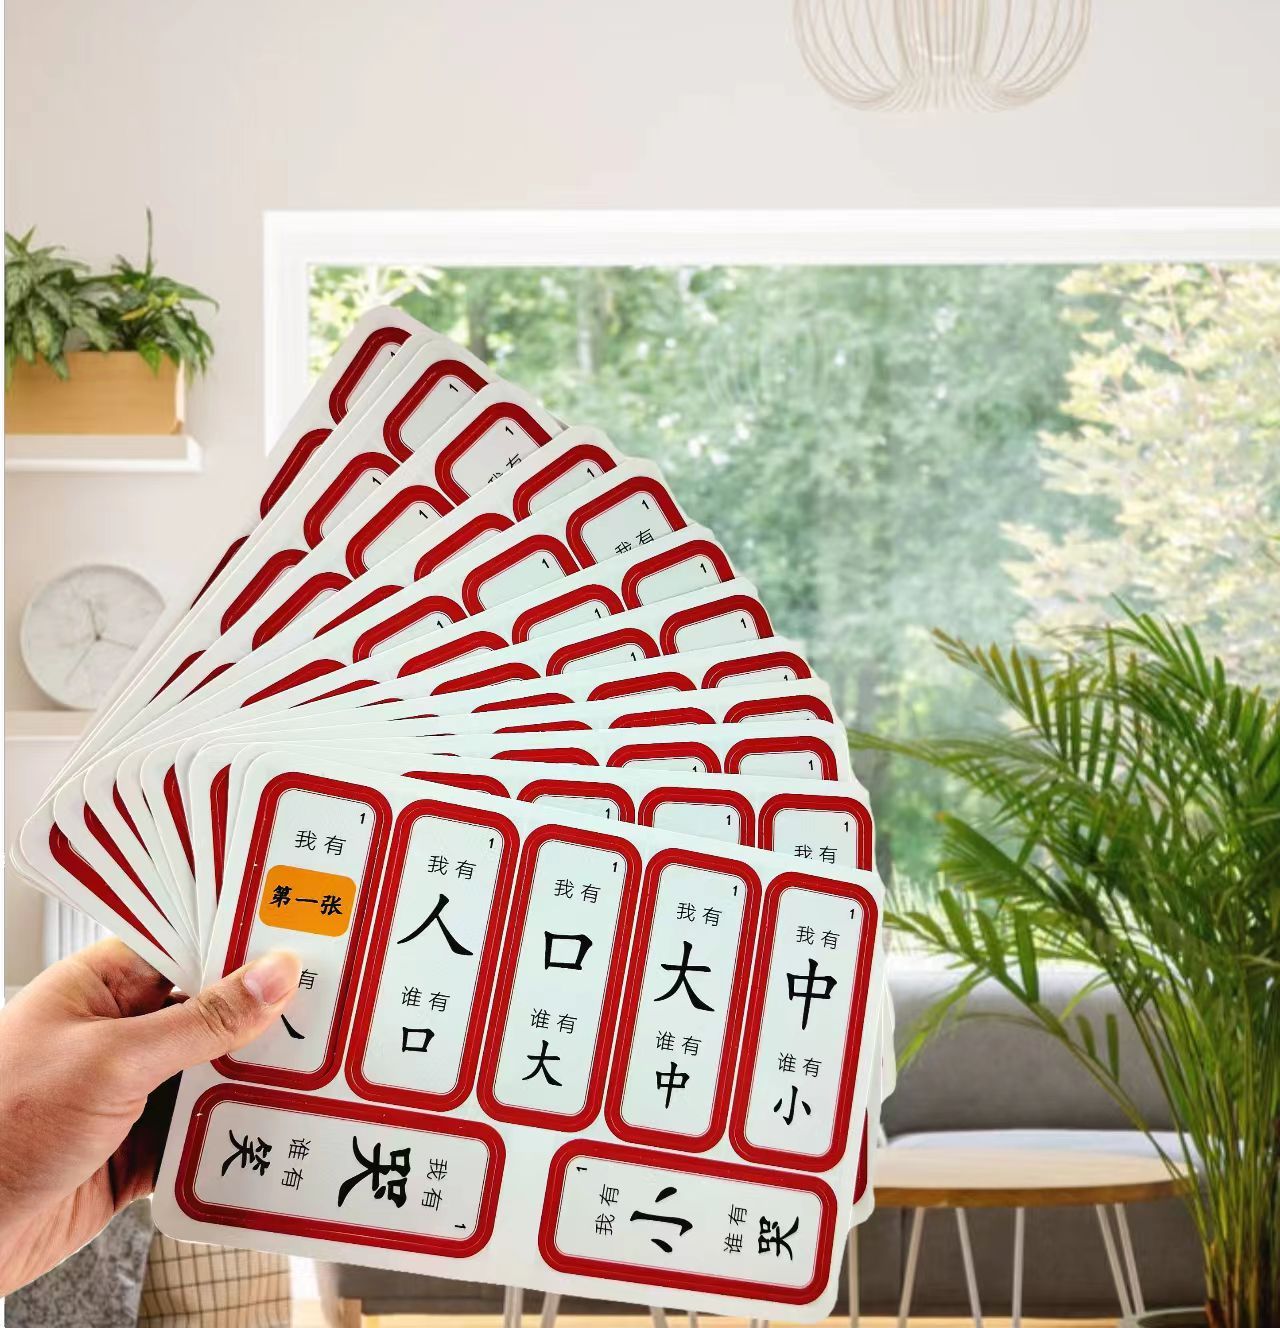 四五快读汉字接龙桌游点读卡游戏扑克亲子互动益智卡片玩具